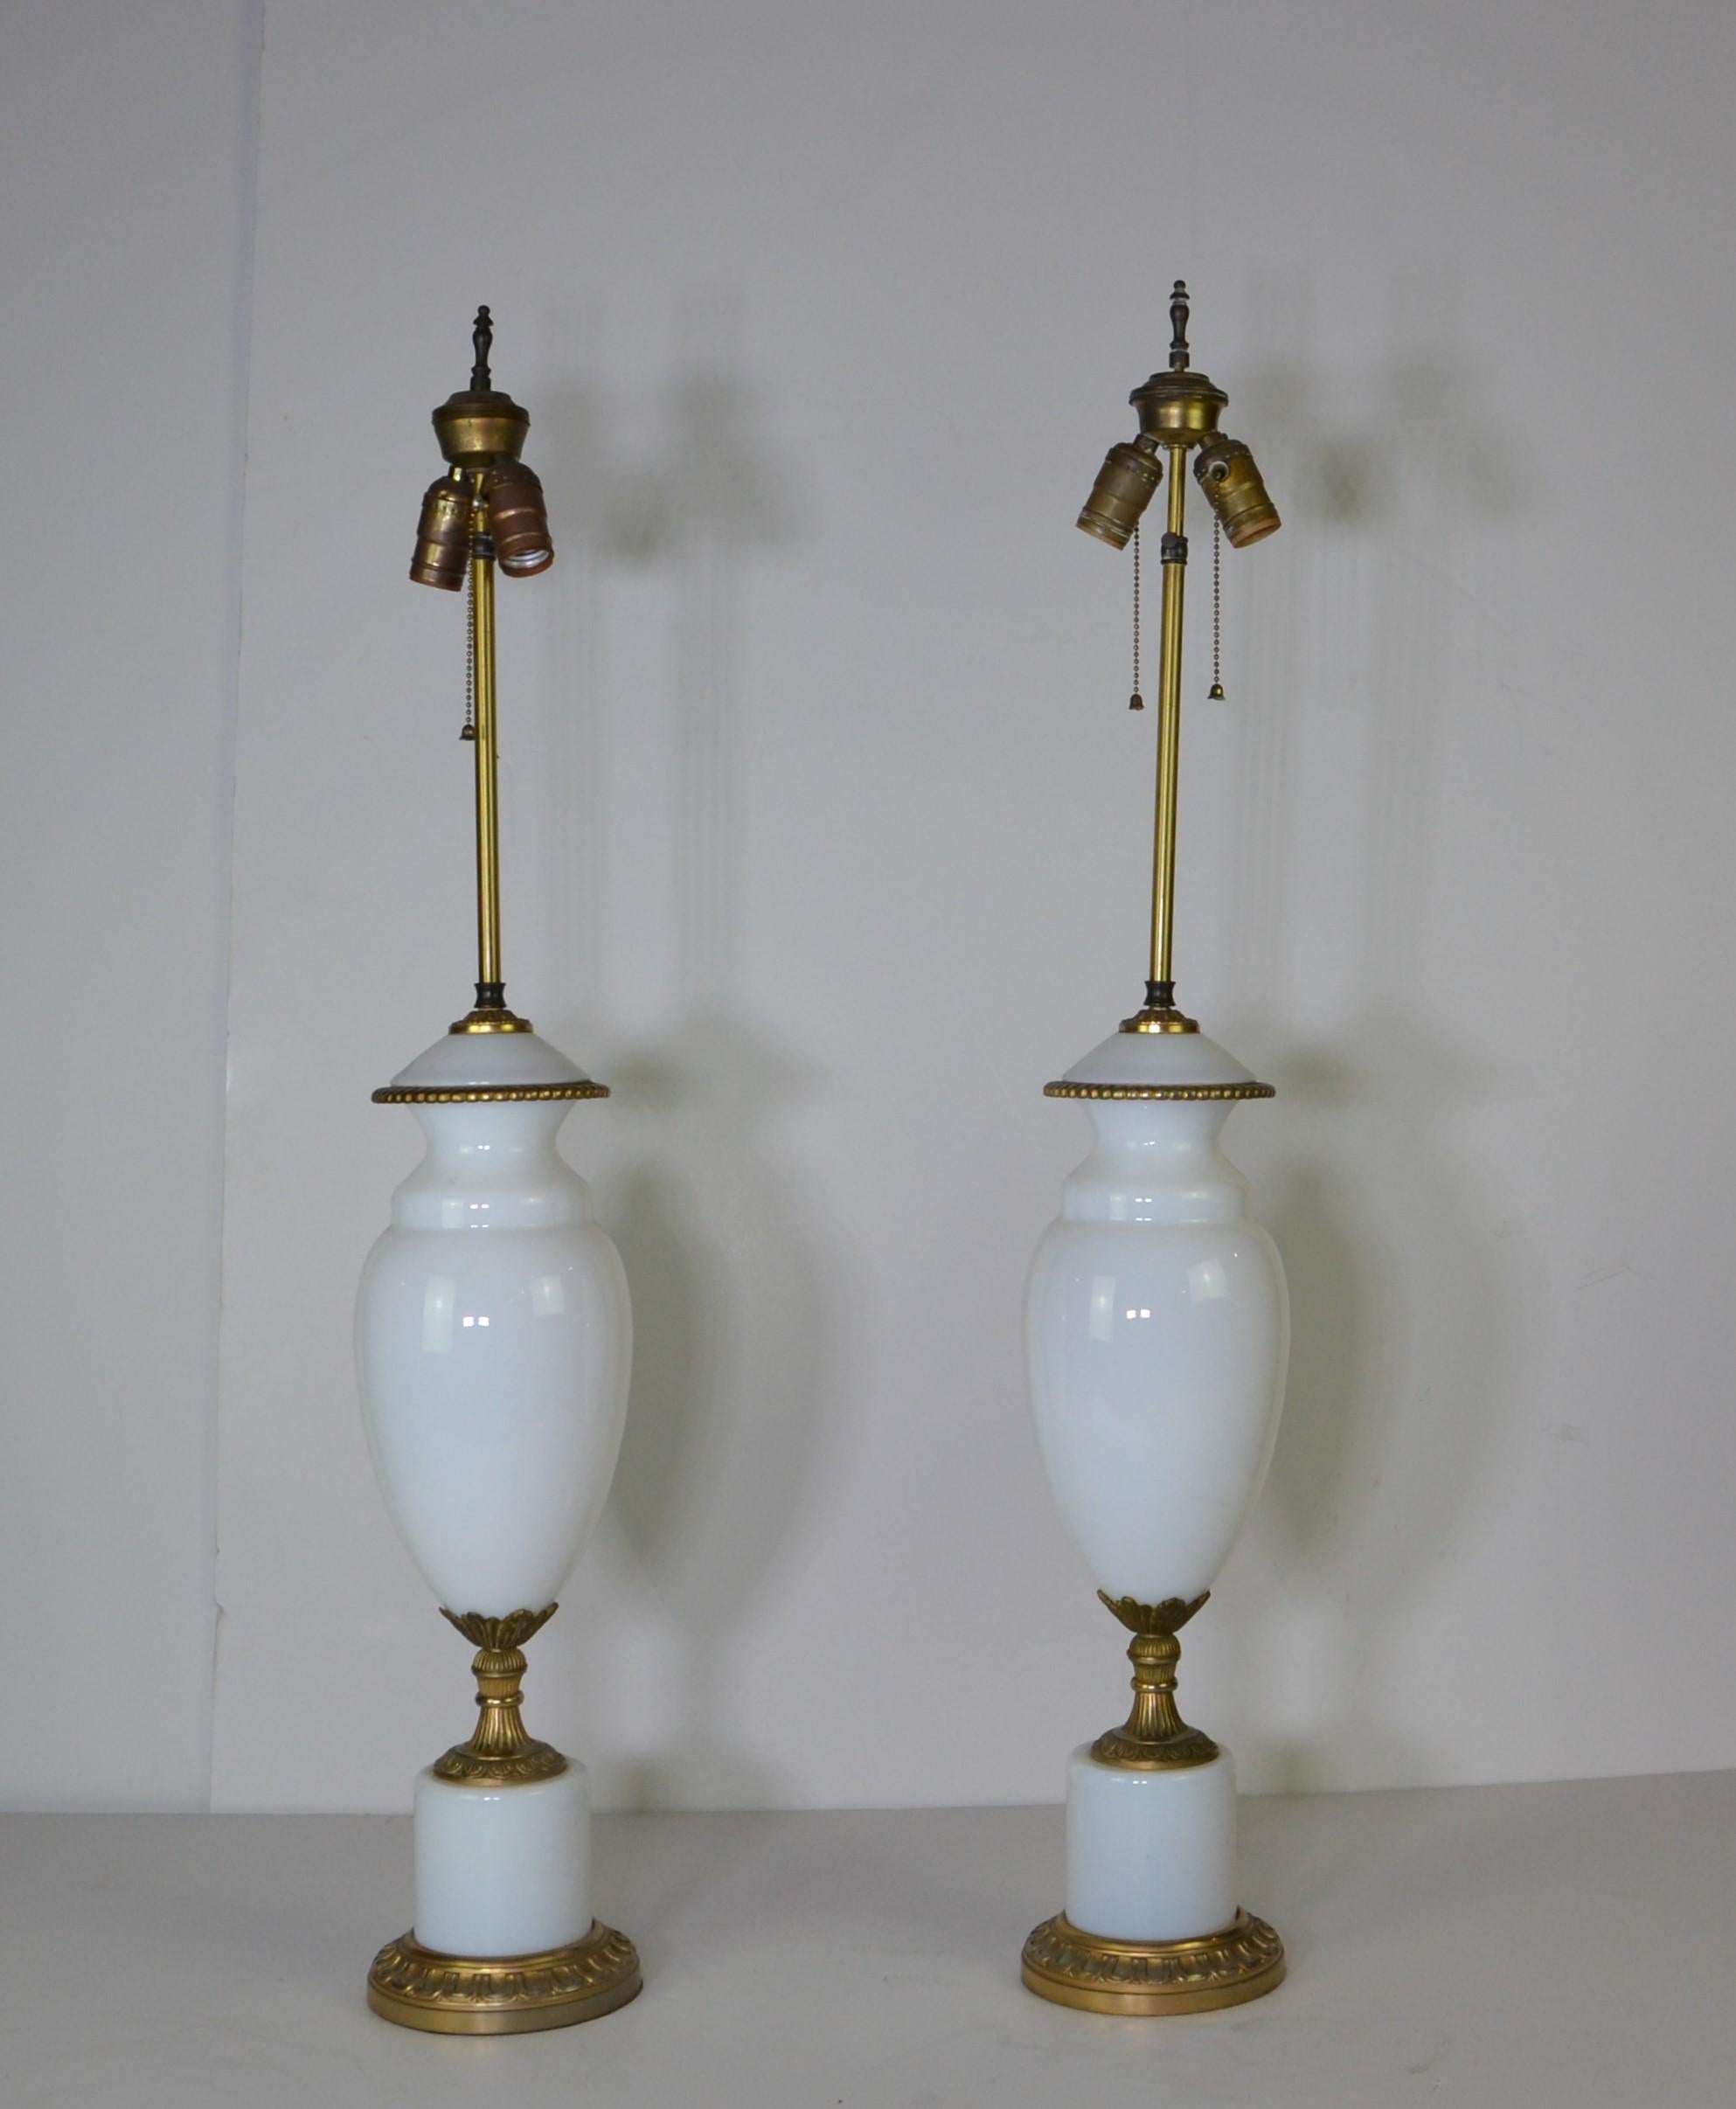 Paar europäische Urnenlampen aus weißem Glas. Der Sockel und die goldenen Details sind aus Messing.